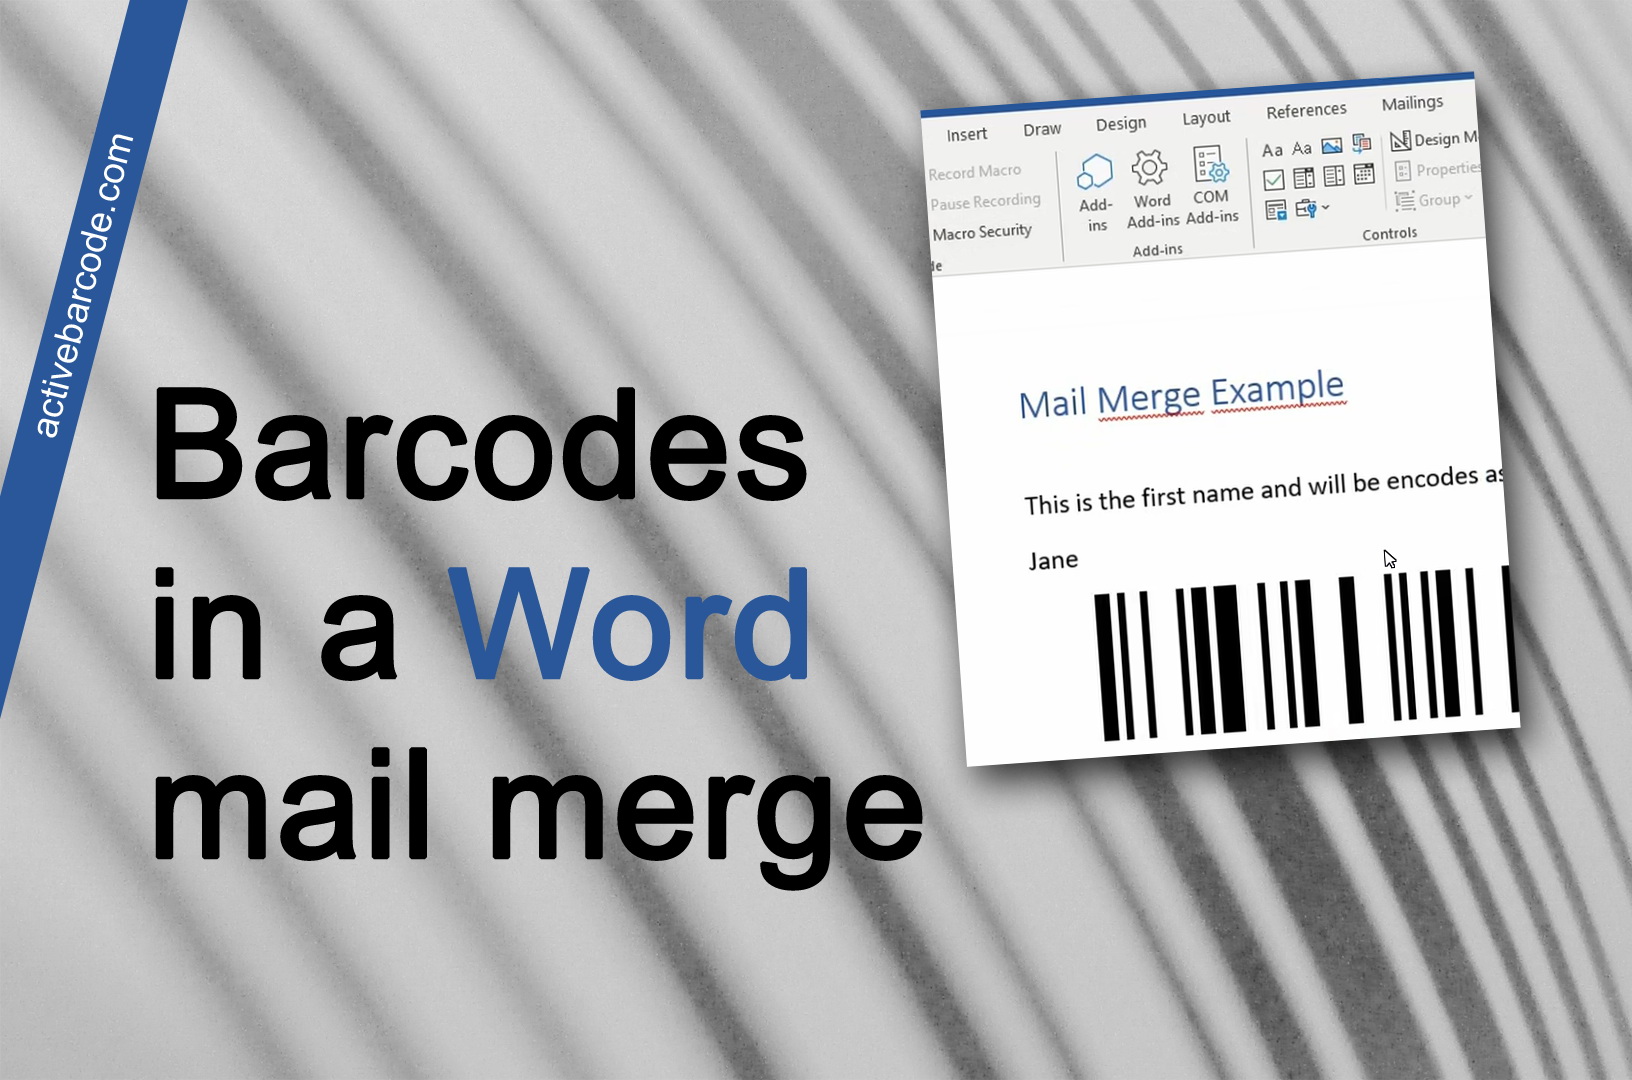 ActiveBarcode: Come aggiungere un codice a barre a un'unione di invii esistenti.